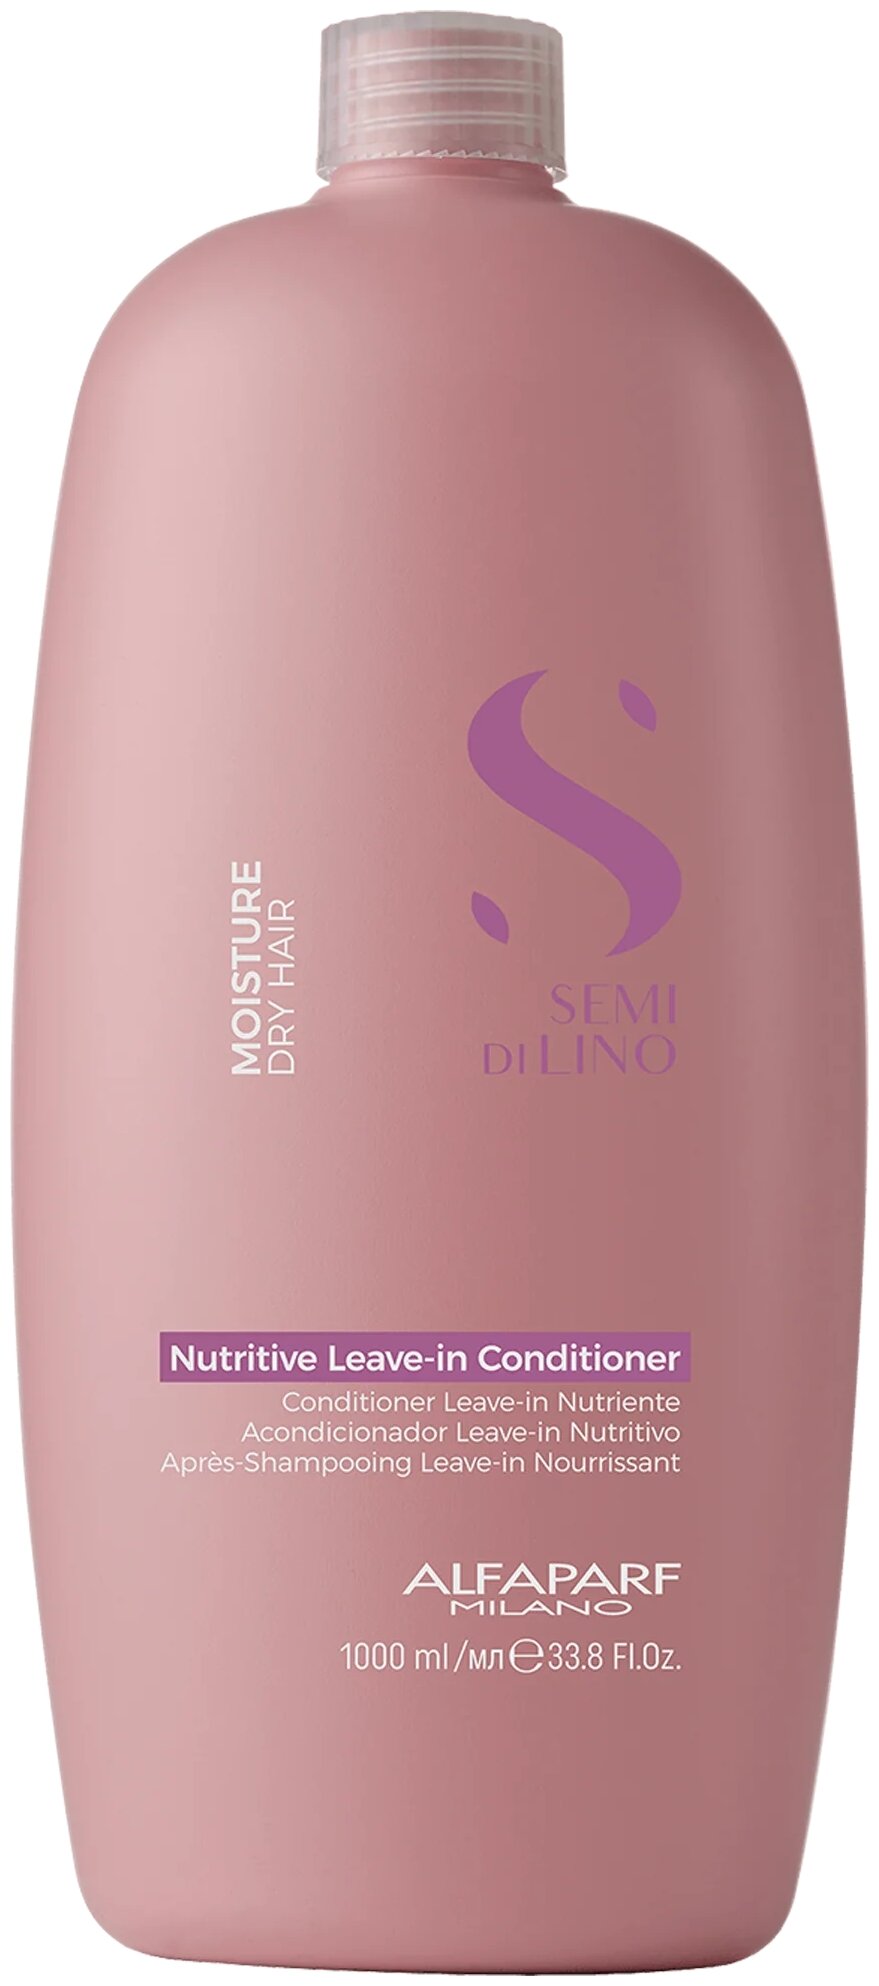 Кондиционер несмываемый для сухих волос Alfaparf Milano SDL M Nutritive Leave-In Conditioner, 1000 мл